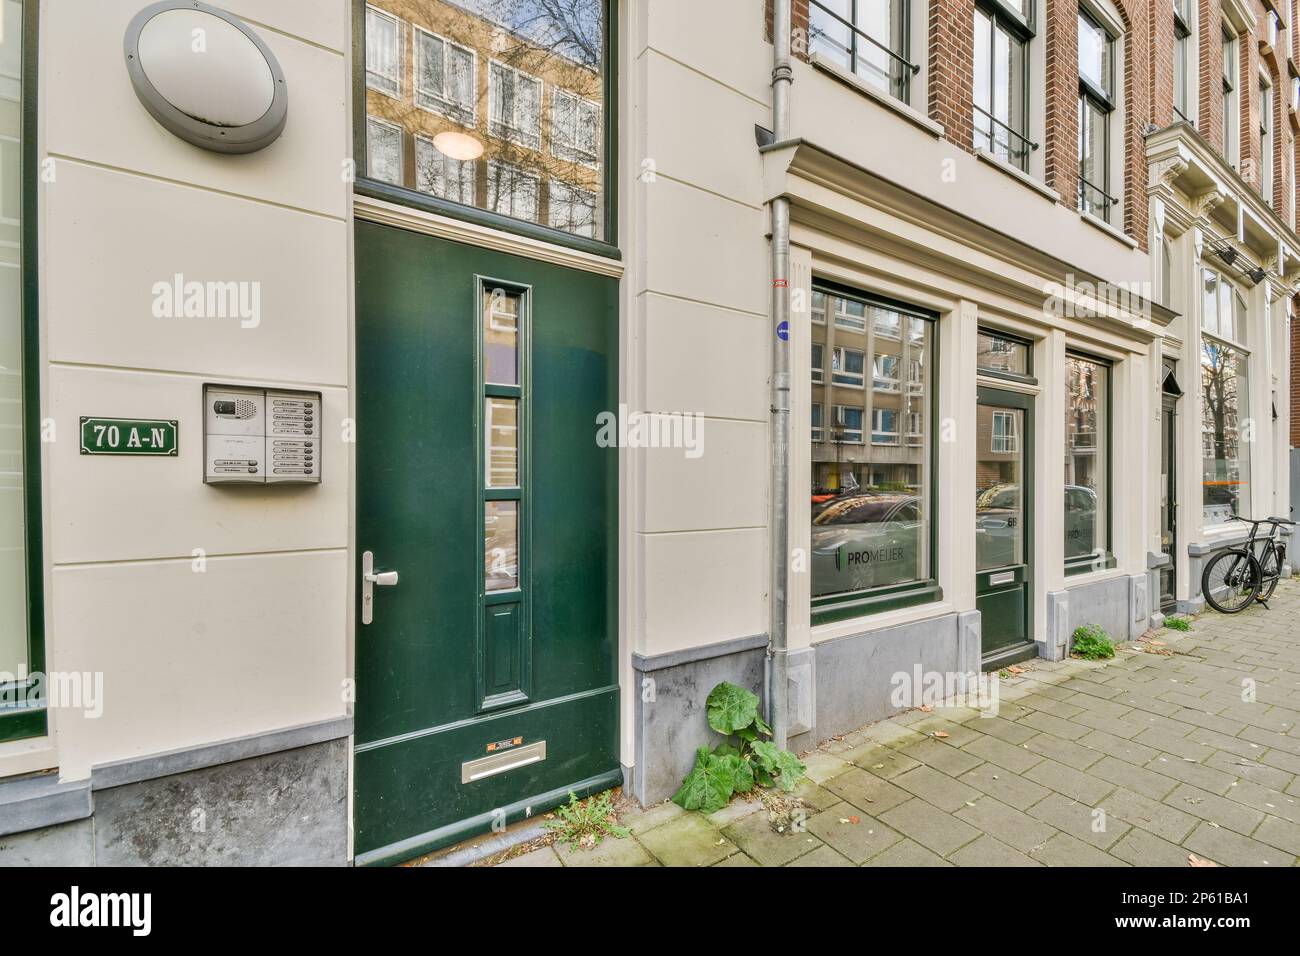 Amsterdam, pays-Bas - 10 avril 2021 : une rue avec des bâtiments en arrière-plan et un vélo stationné sur le trottoir à côté de la porte du bâtiment Banque D'Images